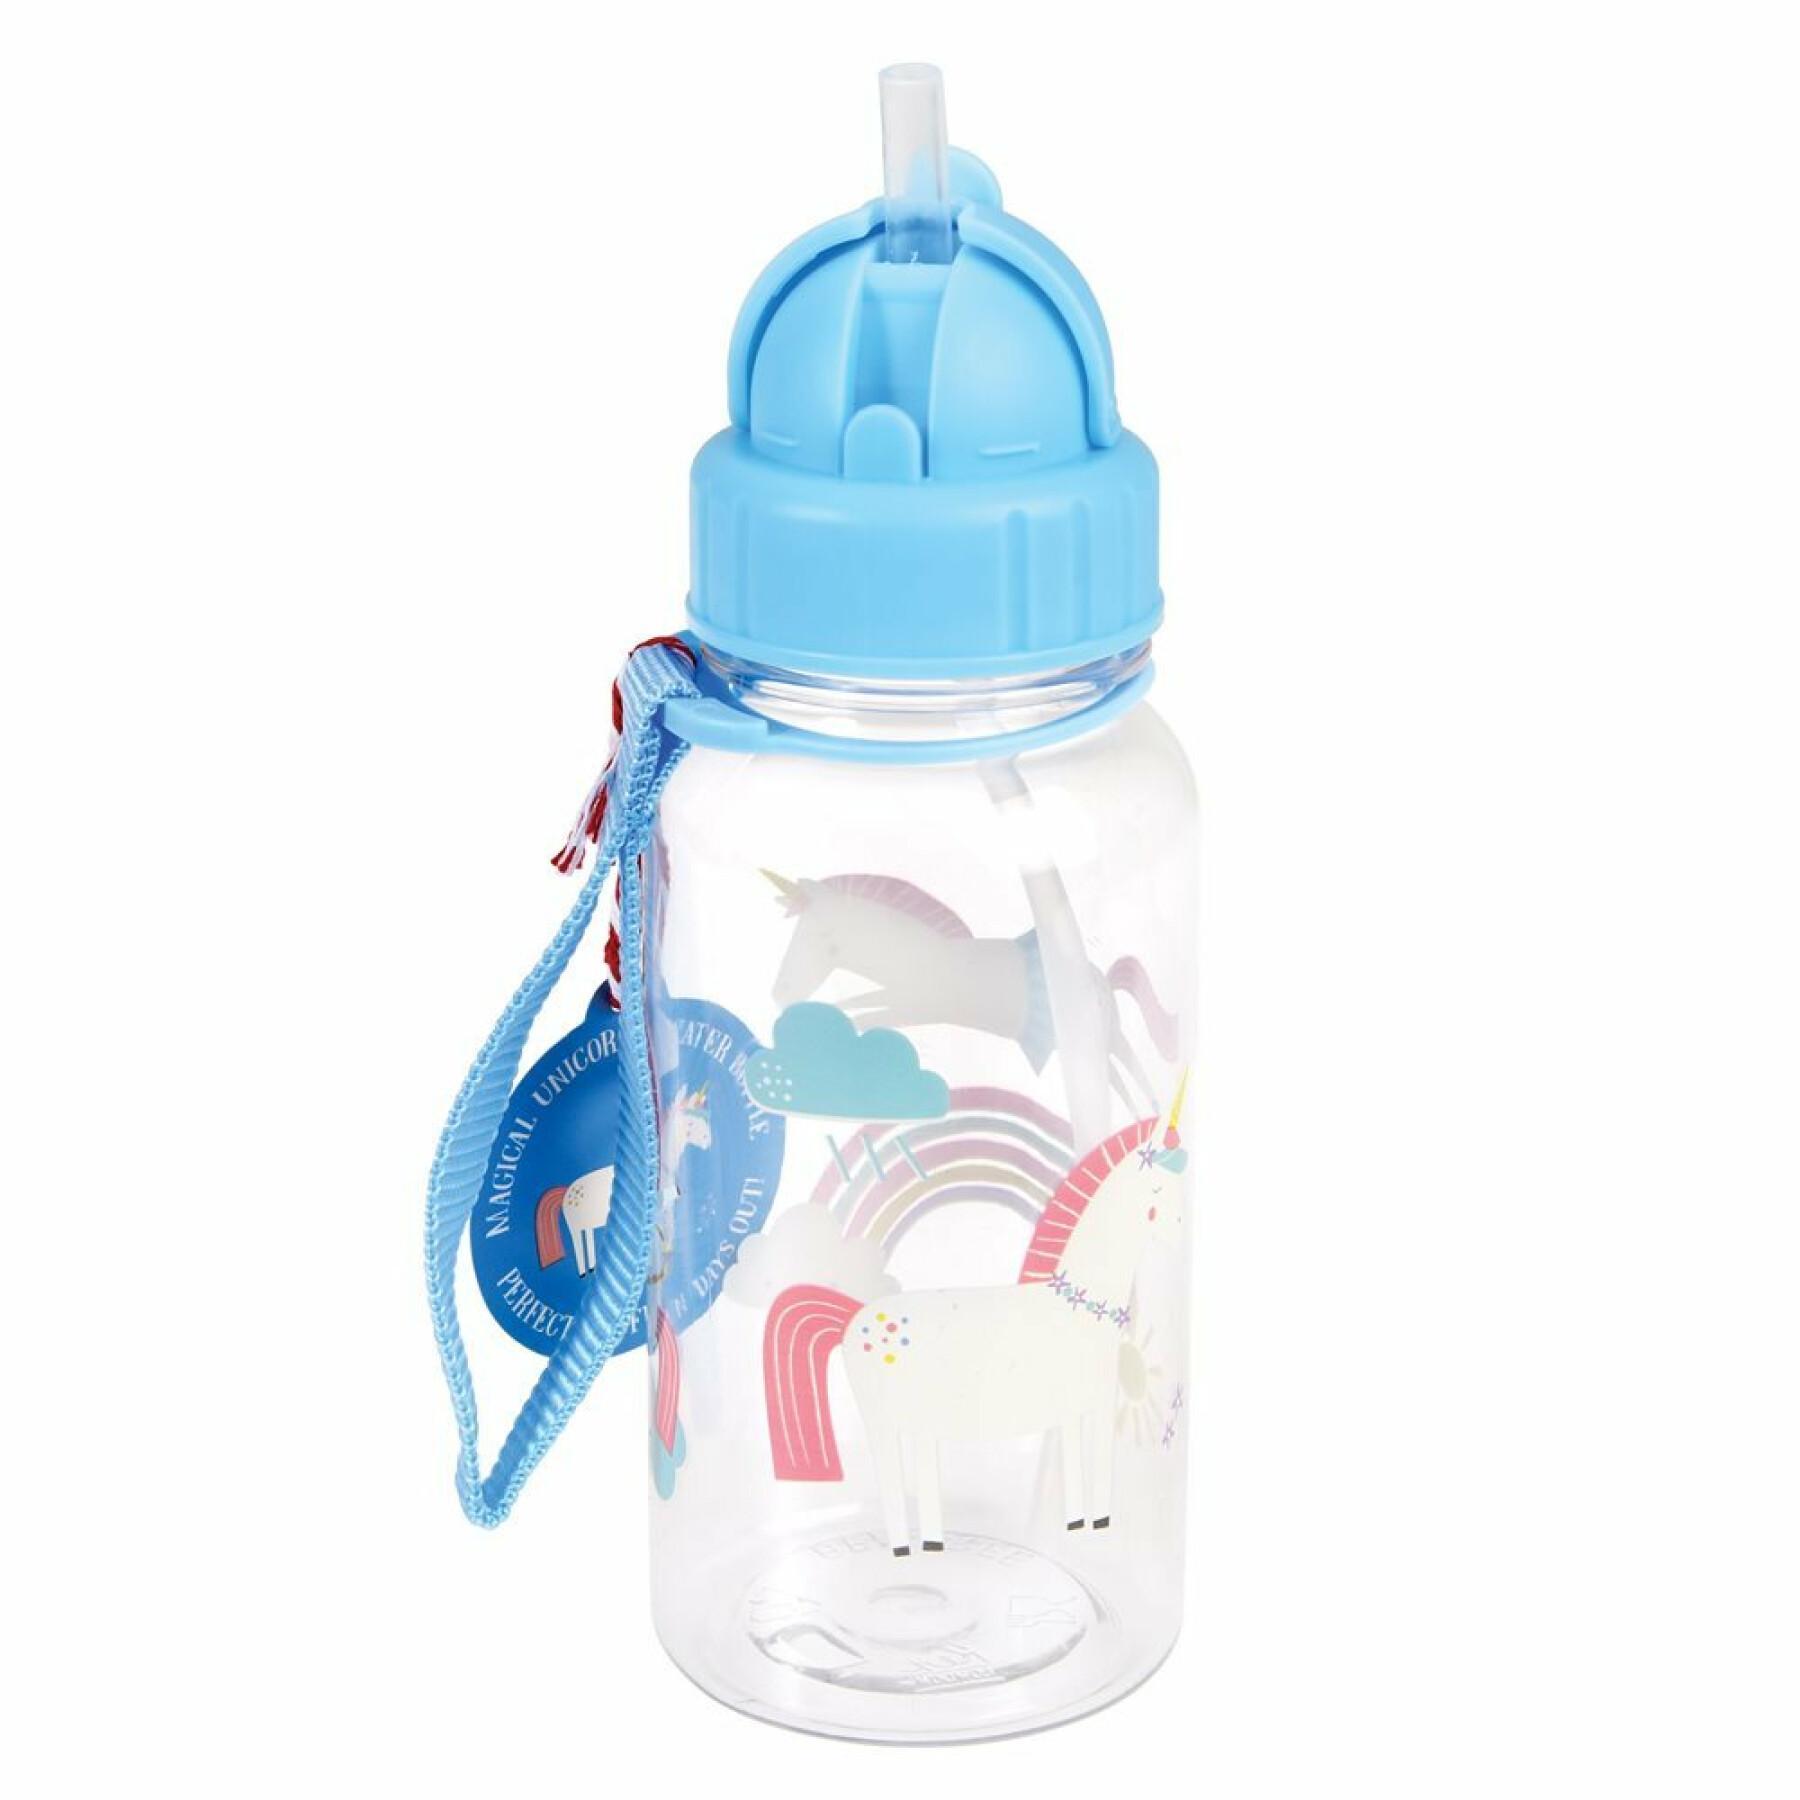 Reusable bottle for children Rex London Licorne